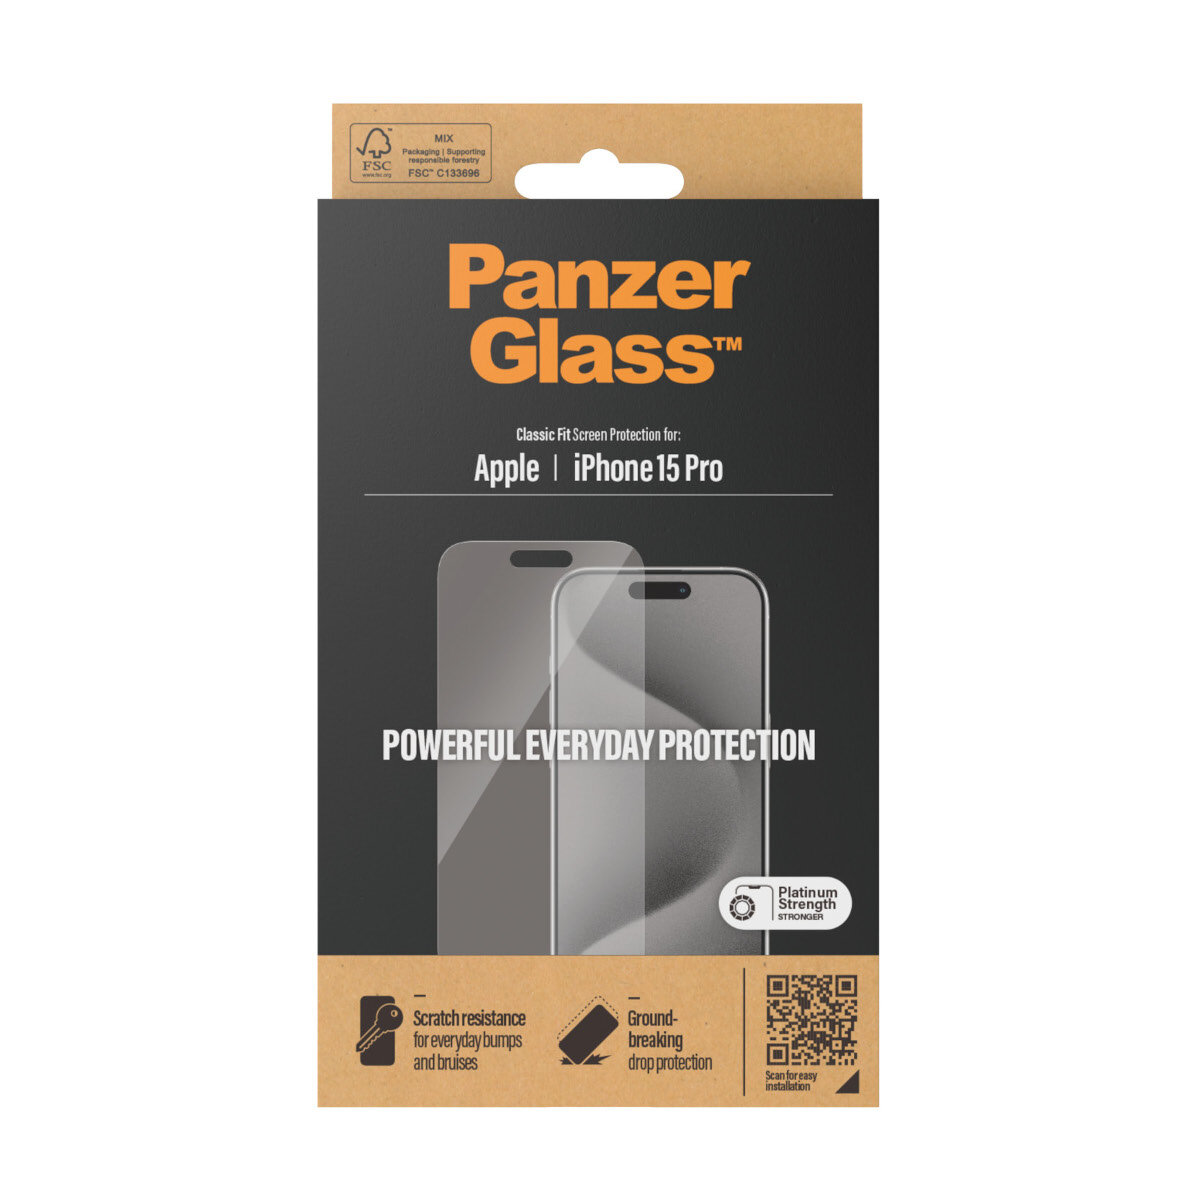 Szkło hartowane PanzerGlass Classic Fit iPhone15 Pro opakowanie frontem